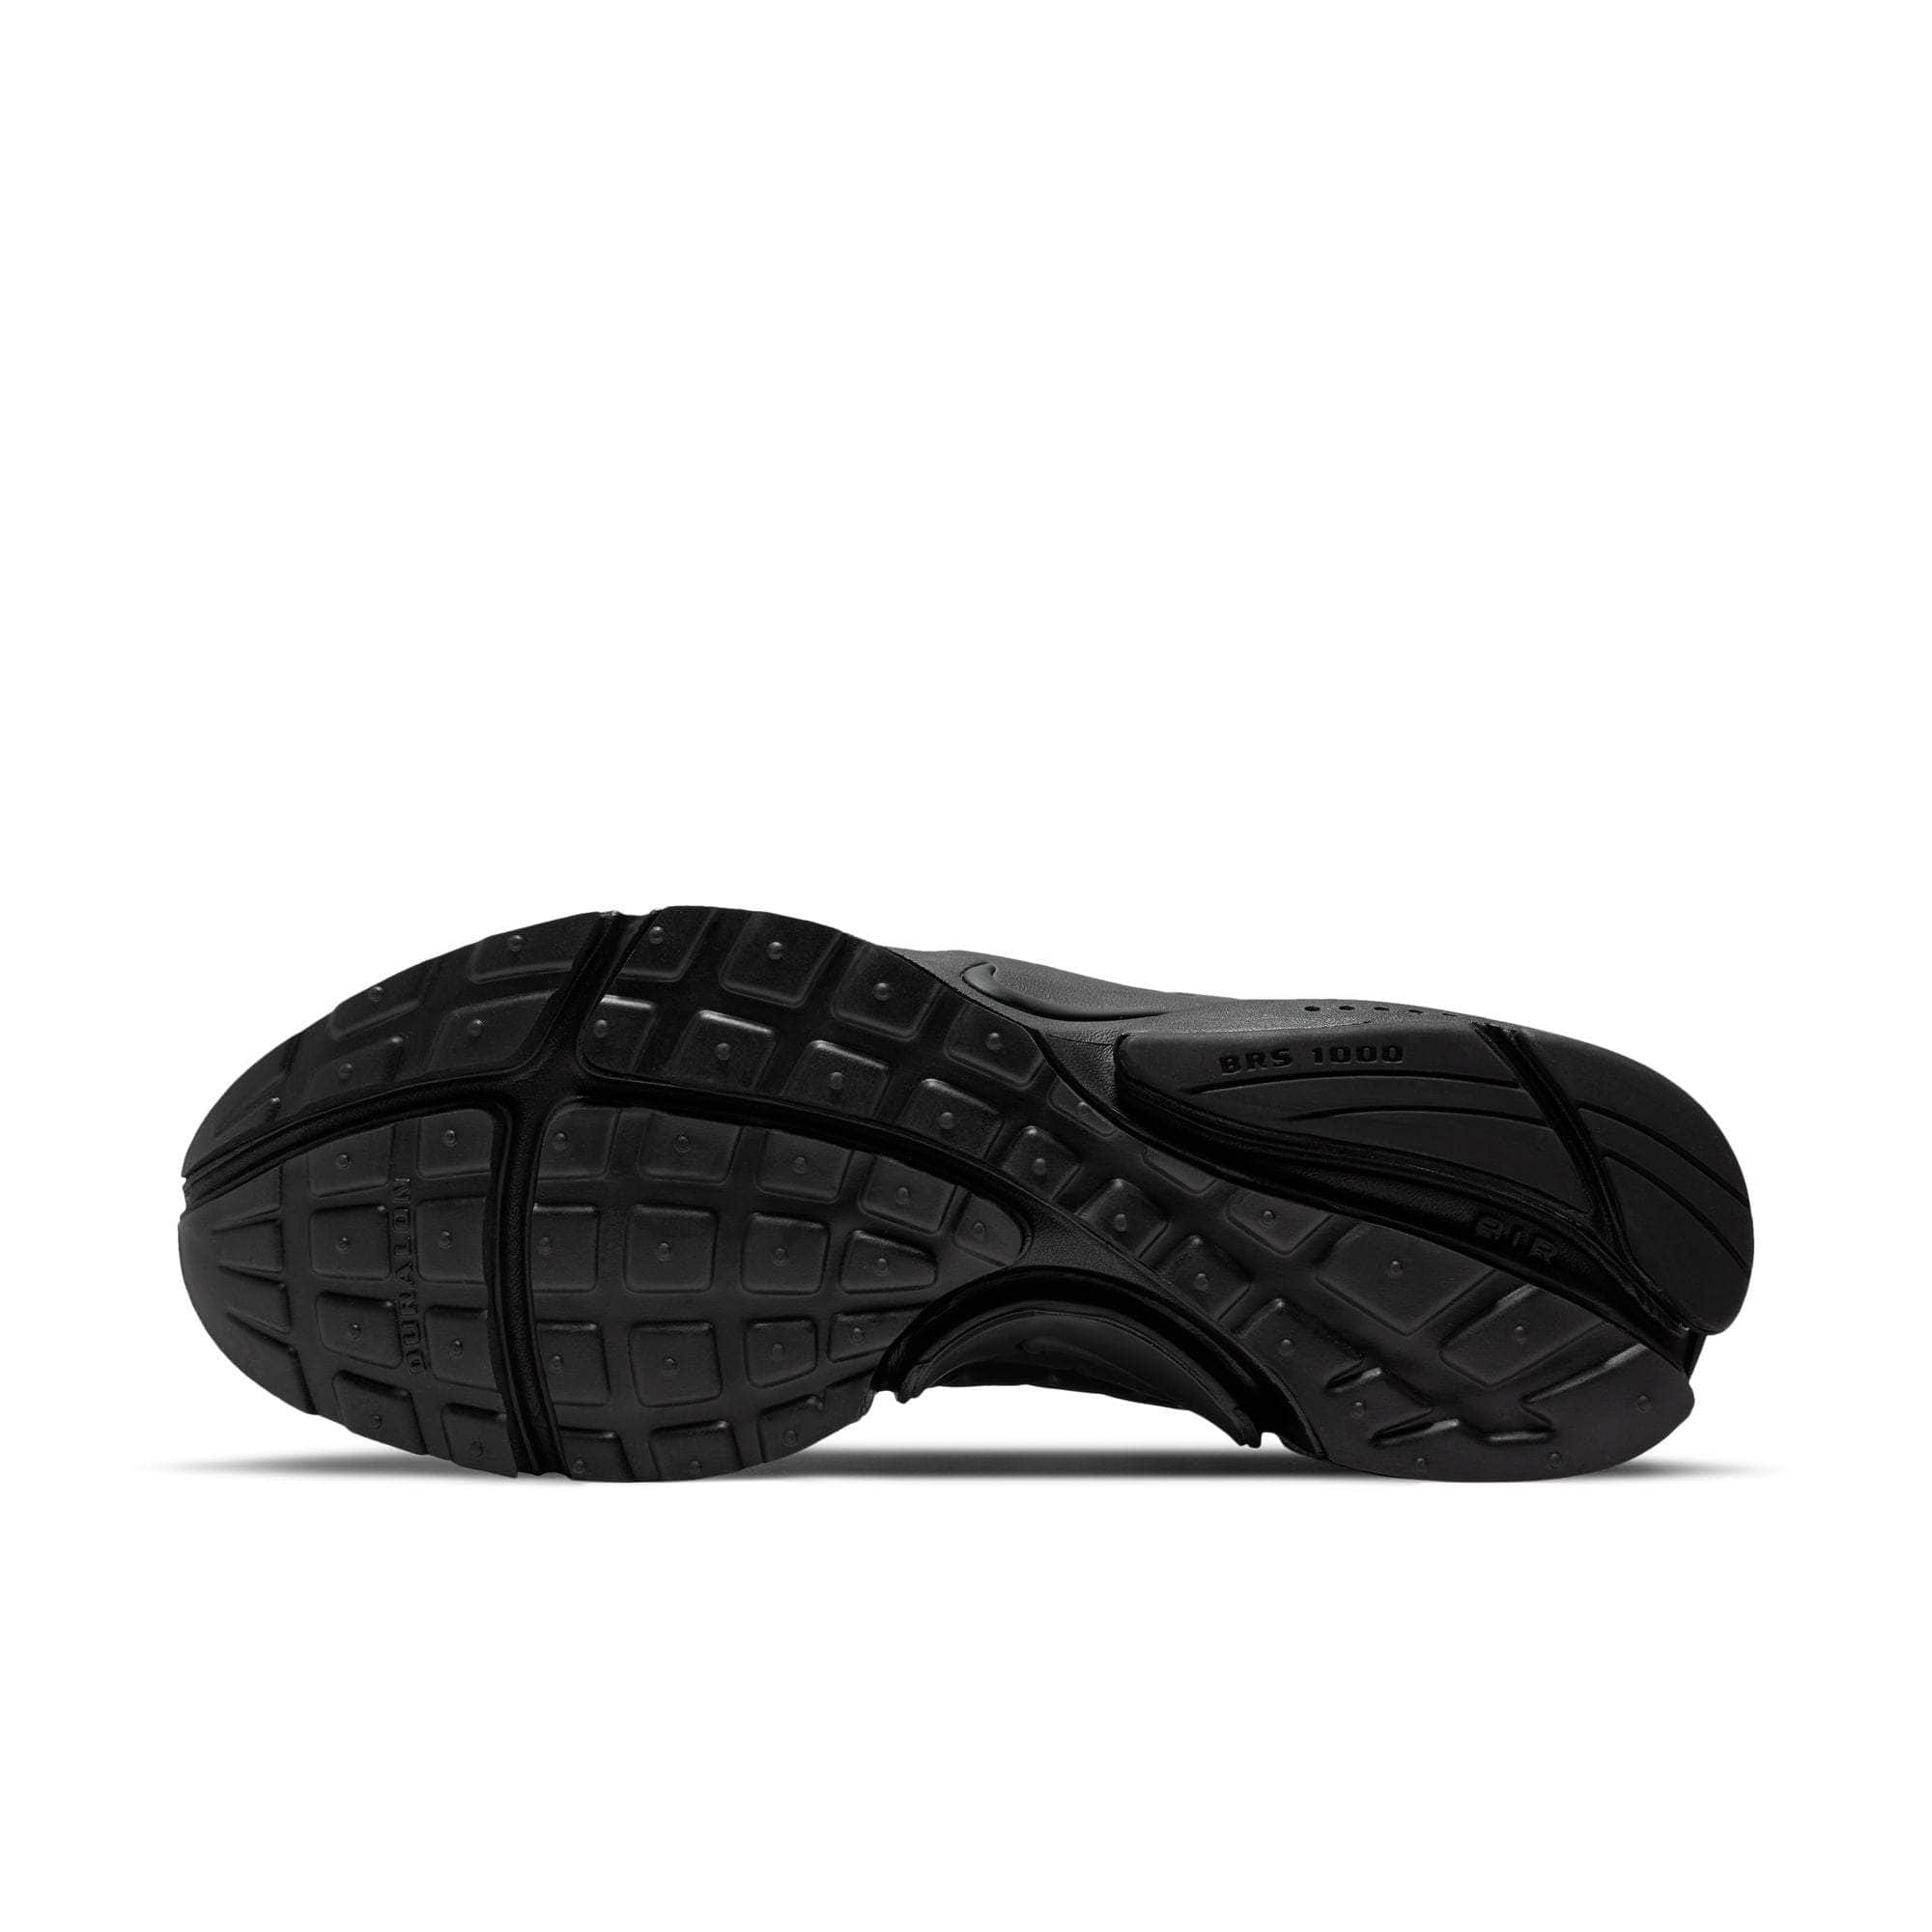 NIKE FOOTWEAR Nike Air Presto "Triple Black" - Men's